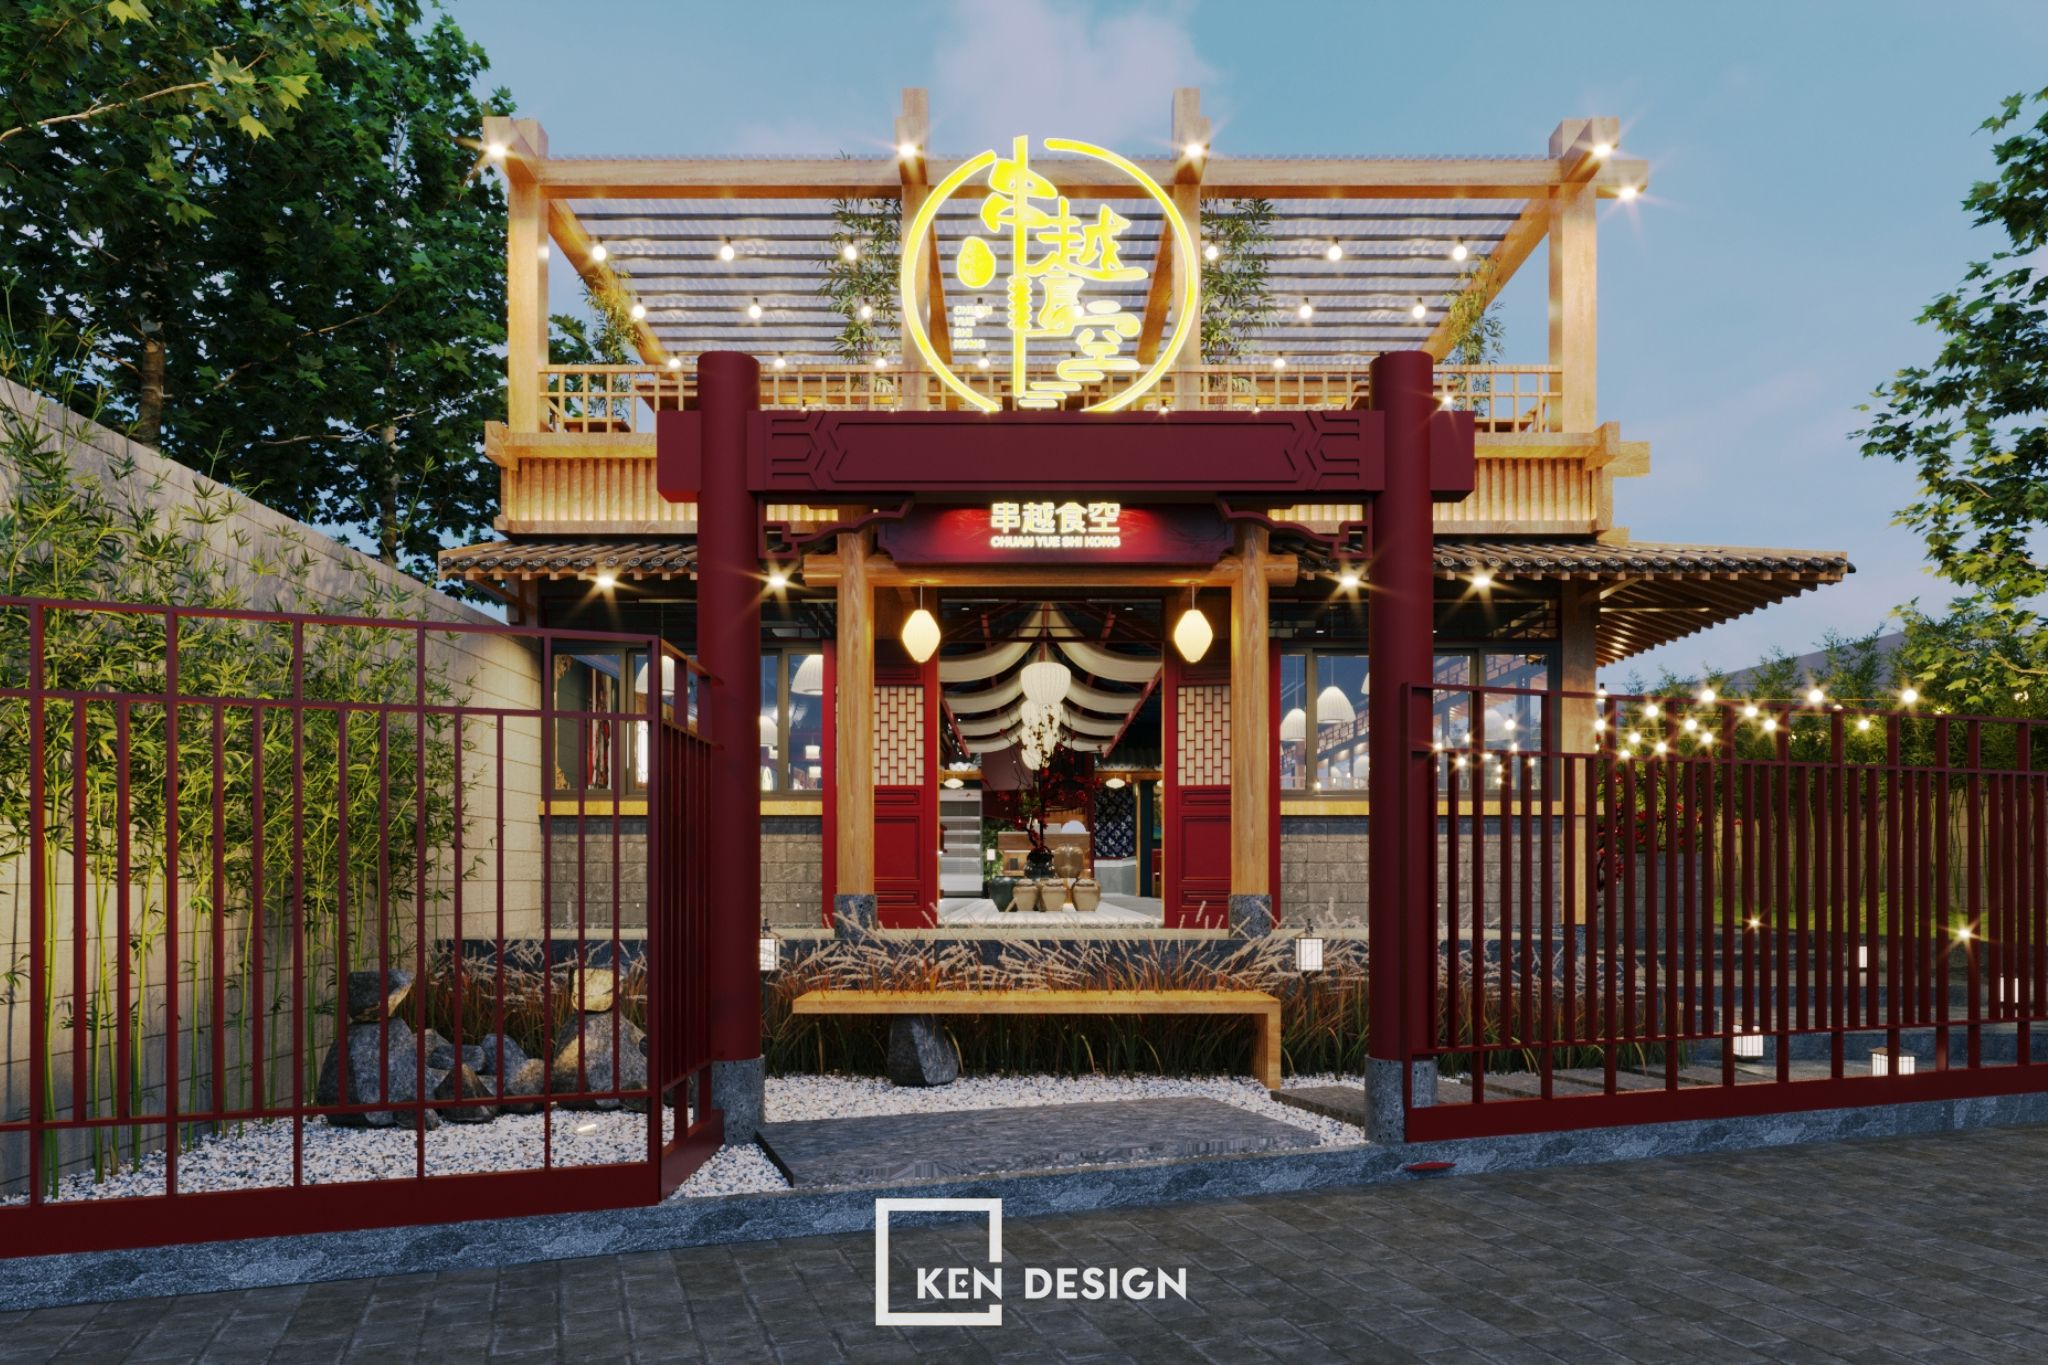 Thiết kế nhà hàng Chuan Yue Shi Kong - Cảm hứng từ kiến trúc Trung Hoa